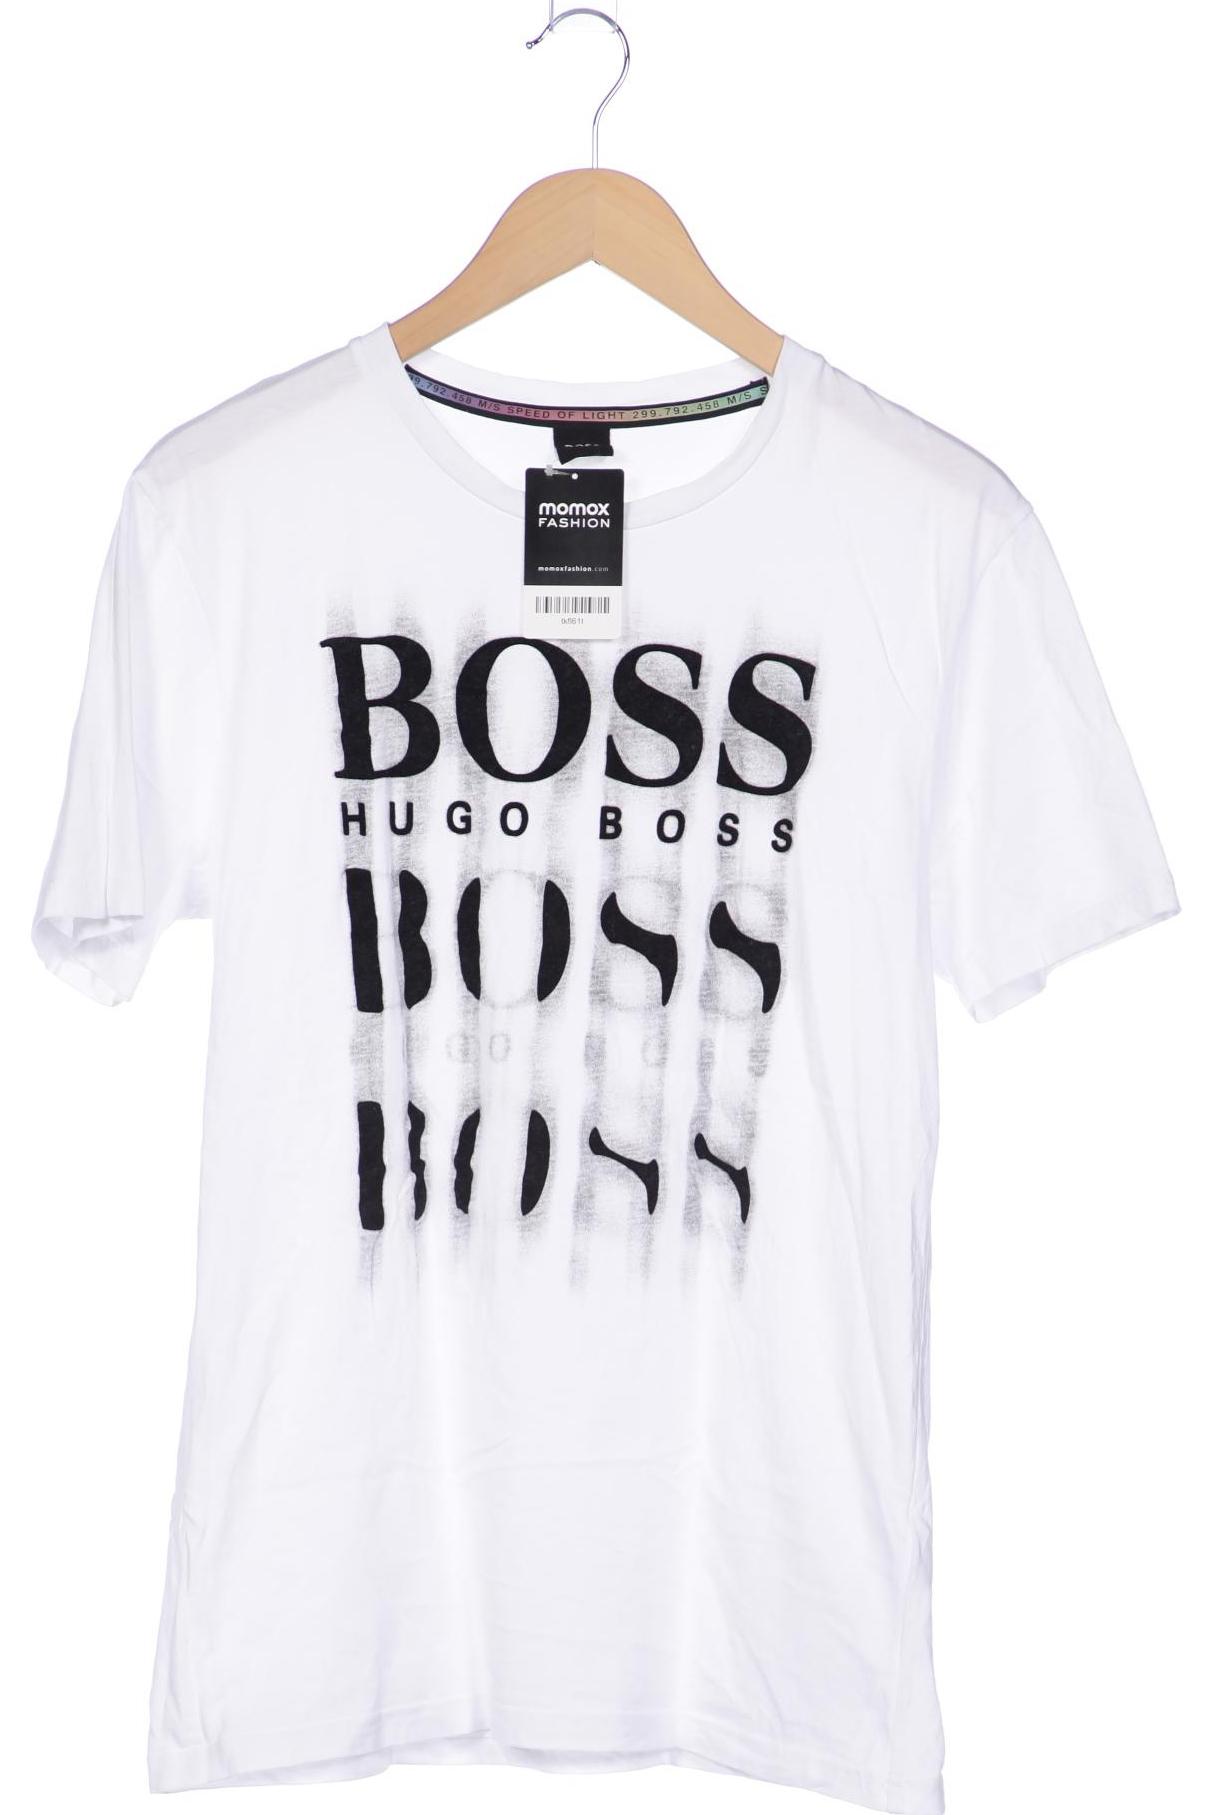 BOSS by Hugo Boss Herren T-Shirt, weiß von BOSS by Hugo Boss